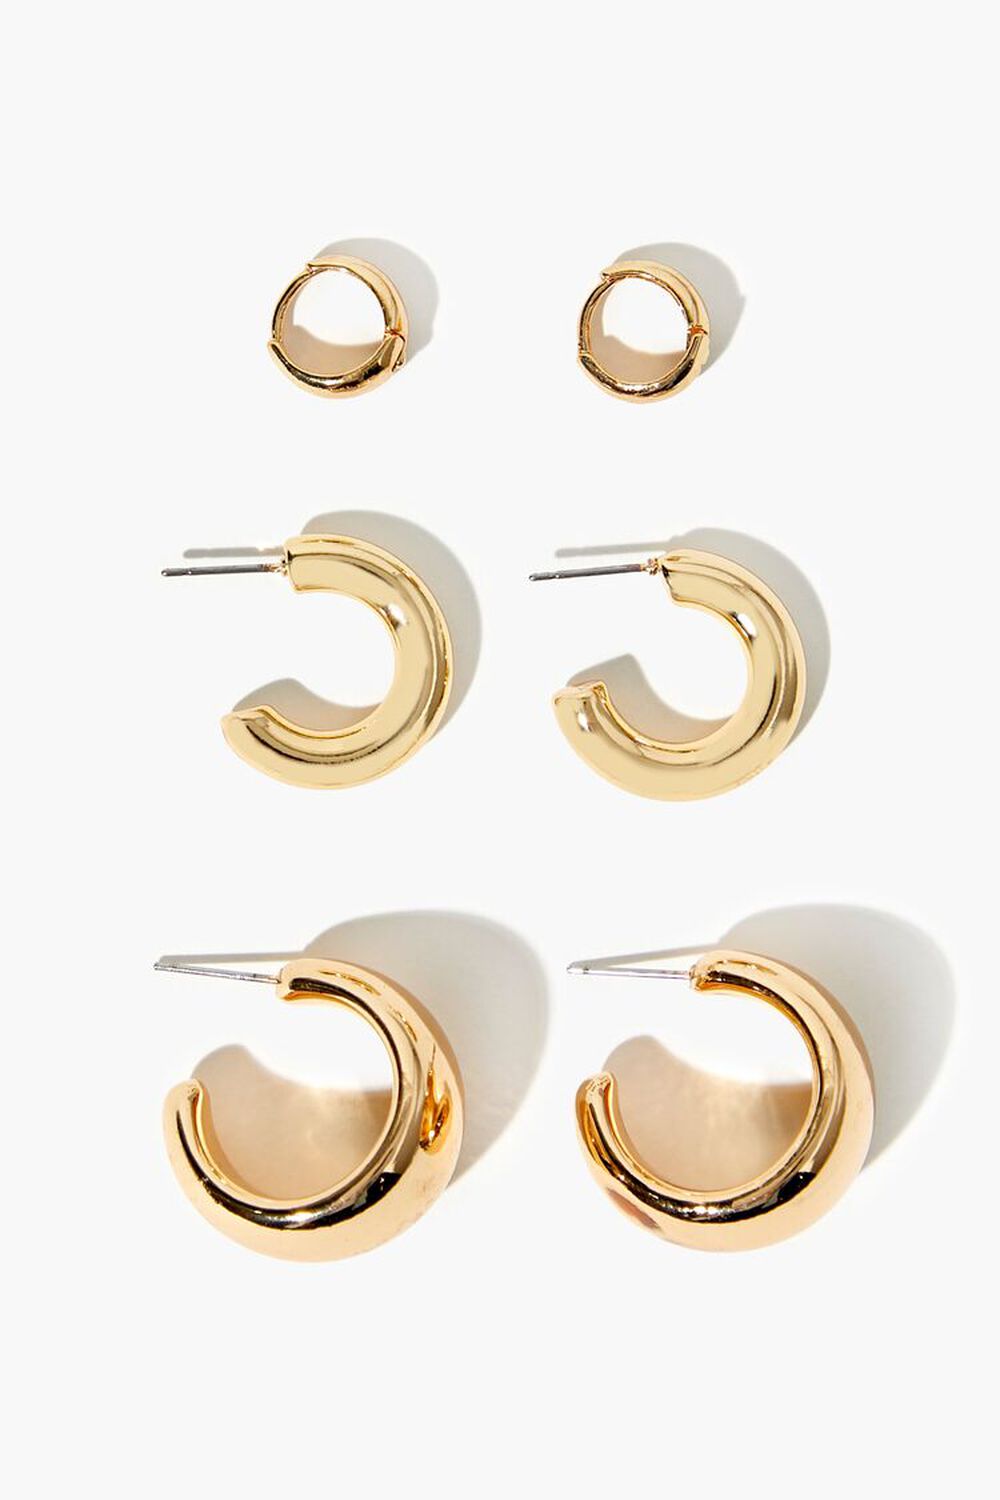 GOLD Hoop Earring Set, image 1